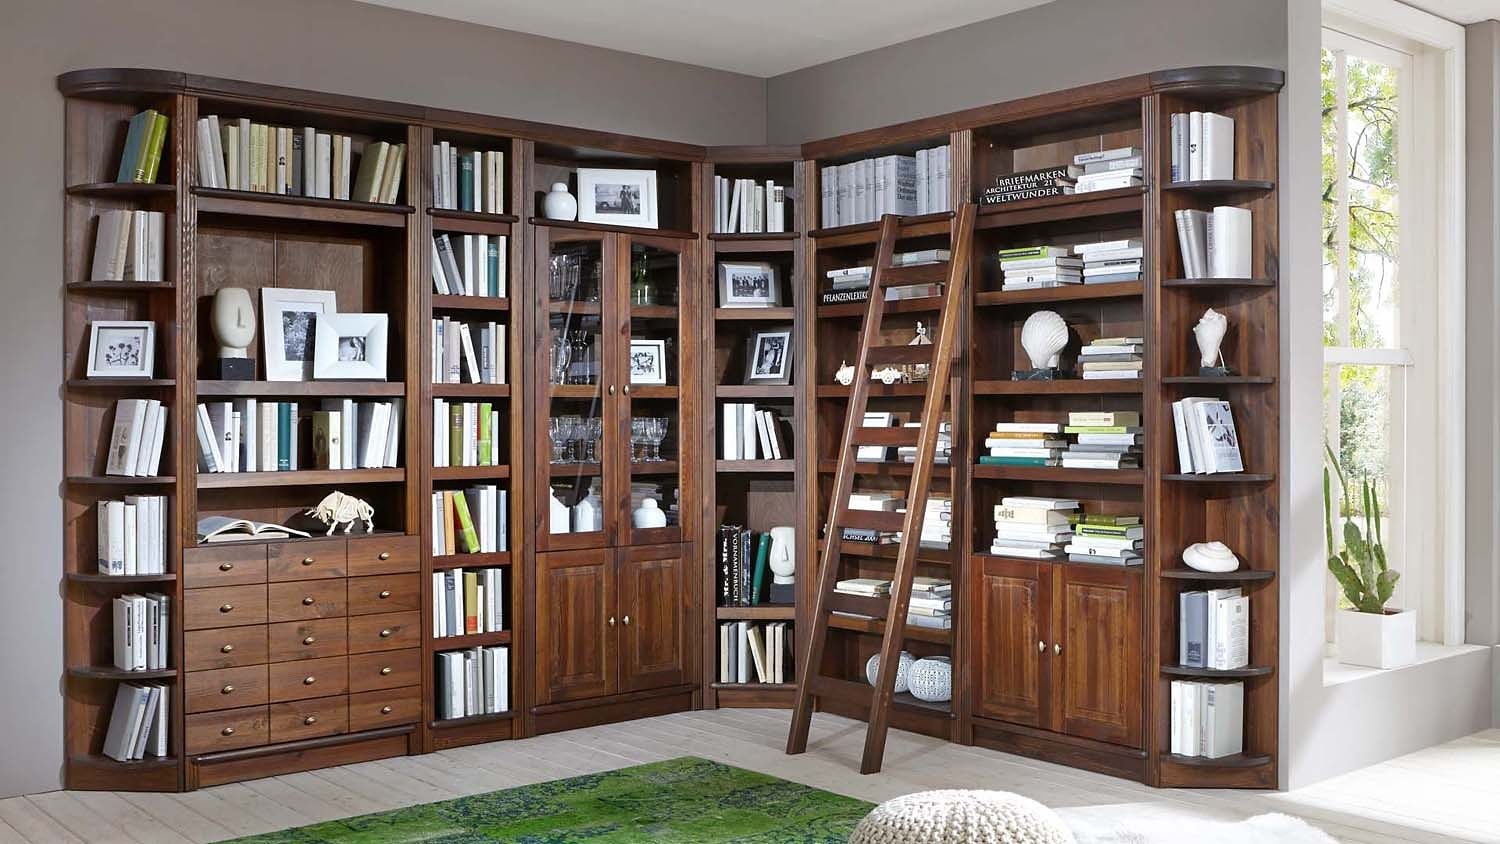 Home affaire Bücherregal »Soeren«, aus massiver Kiefer, in 2 Höhen, Tiefe  29 cm, mit viel Stauraum auf Rechnung kaufen